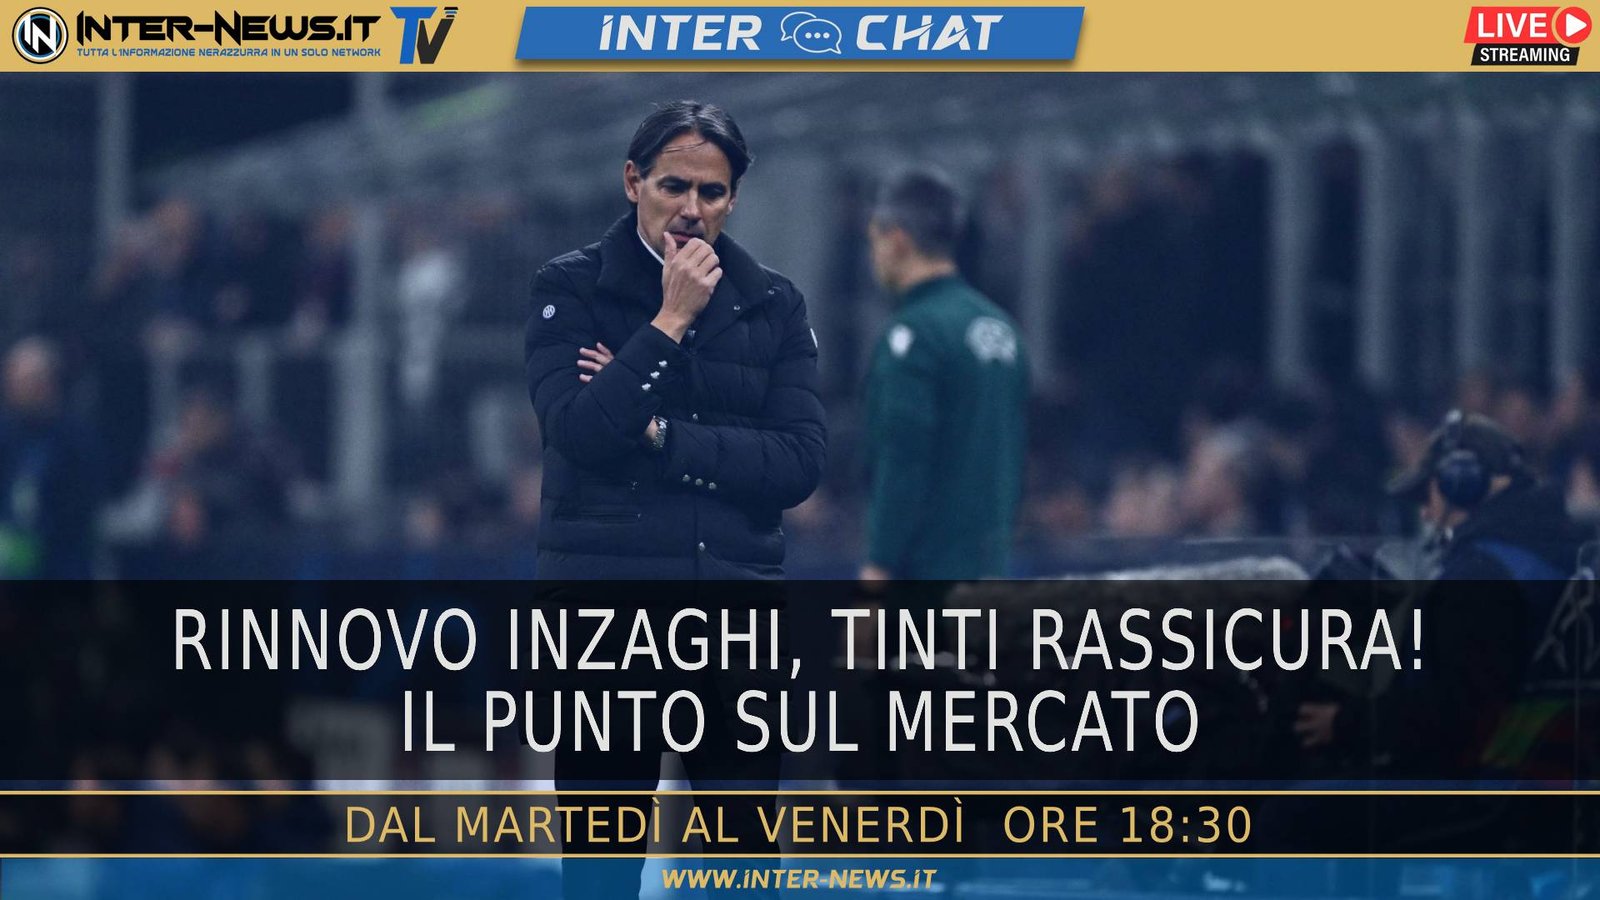 VIDEO ? Inzaghi rinnova, l’agente nella sede dell’Inter | Inter Chat